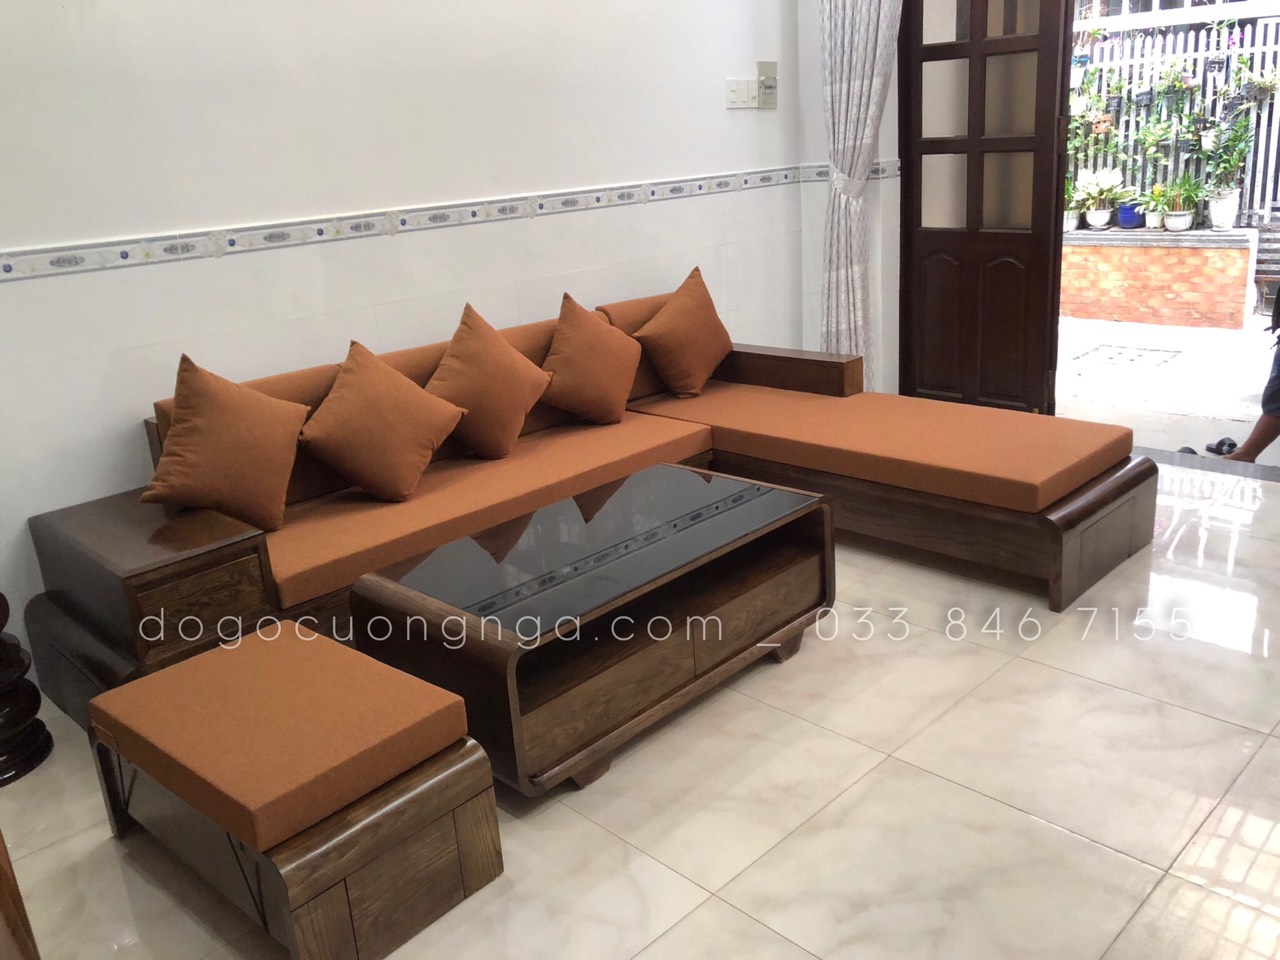 Sofa gỗ chữ L vẫn là một trong những lựa chọn được ưa chuộng nhất cho phòng khách. Với thiết kế hiện đại và đường nét tinh tế, sofa này đem lại cảm giác thoải mái và ấm cúng cho ngôi nhà của bạn. Hãy xem ảnh để tận hưởng sự hoàn hảo của sofa gỗ chữ L.